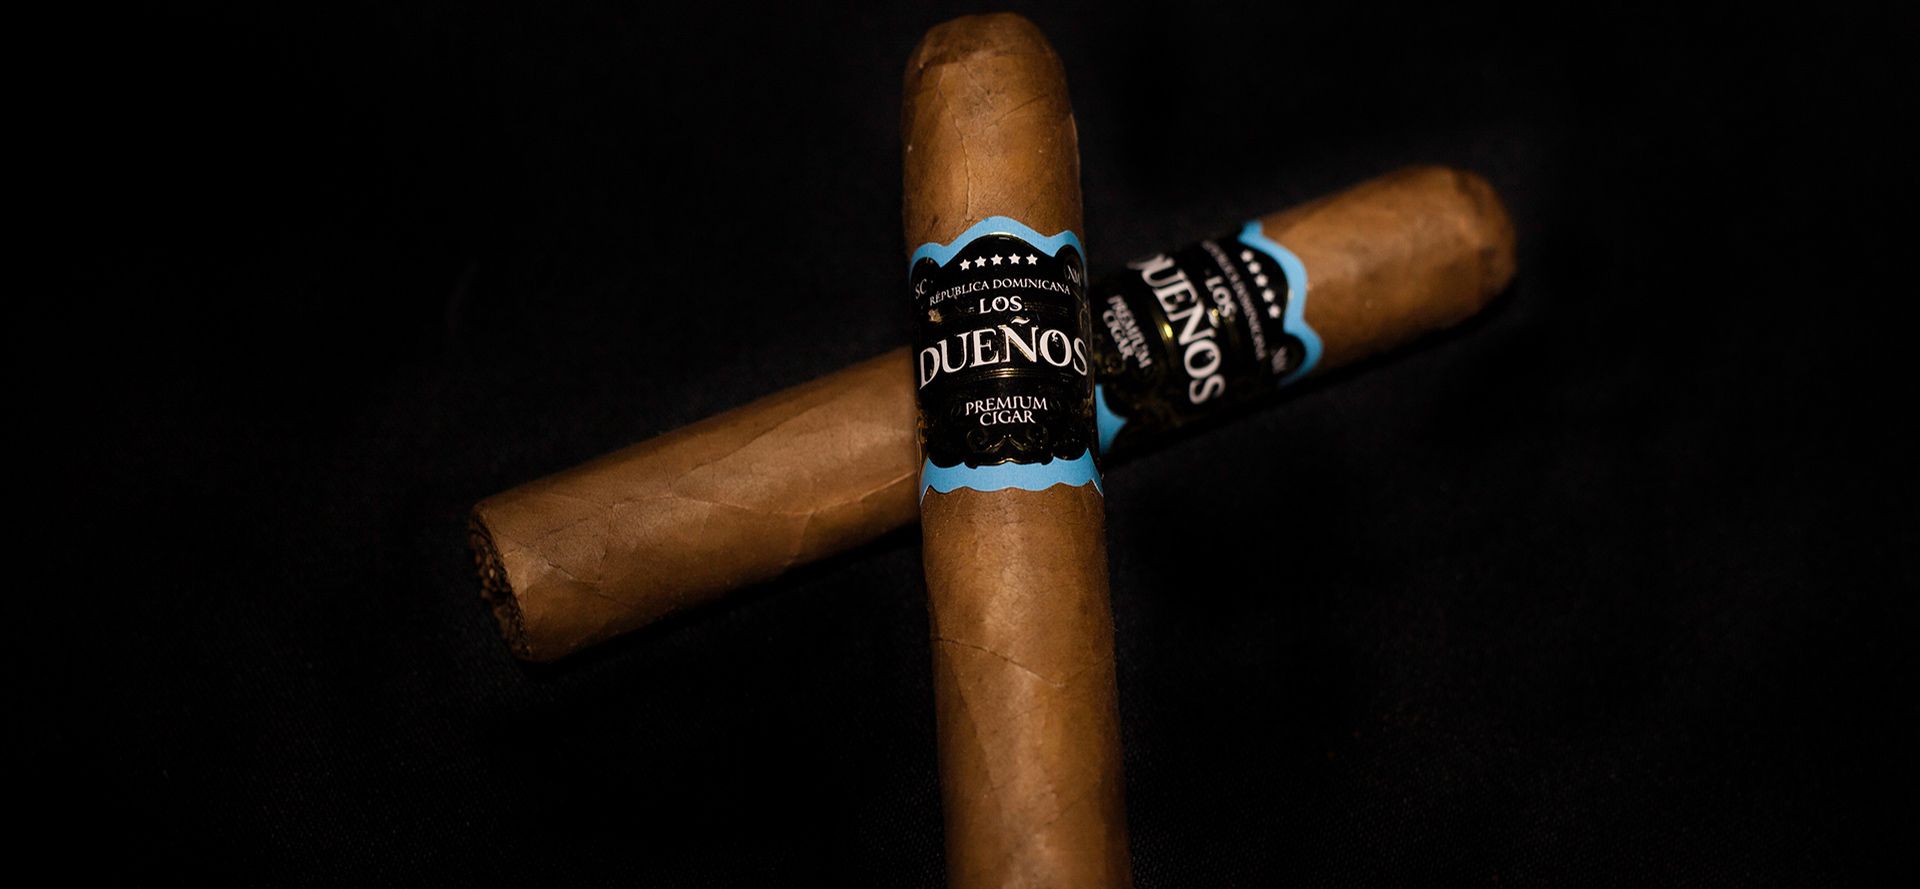 Dominican Cigars Los Duenos.